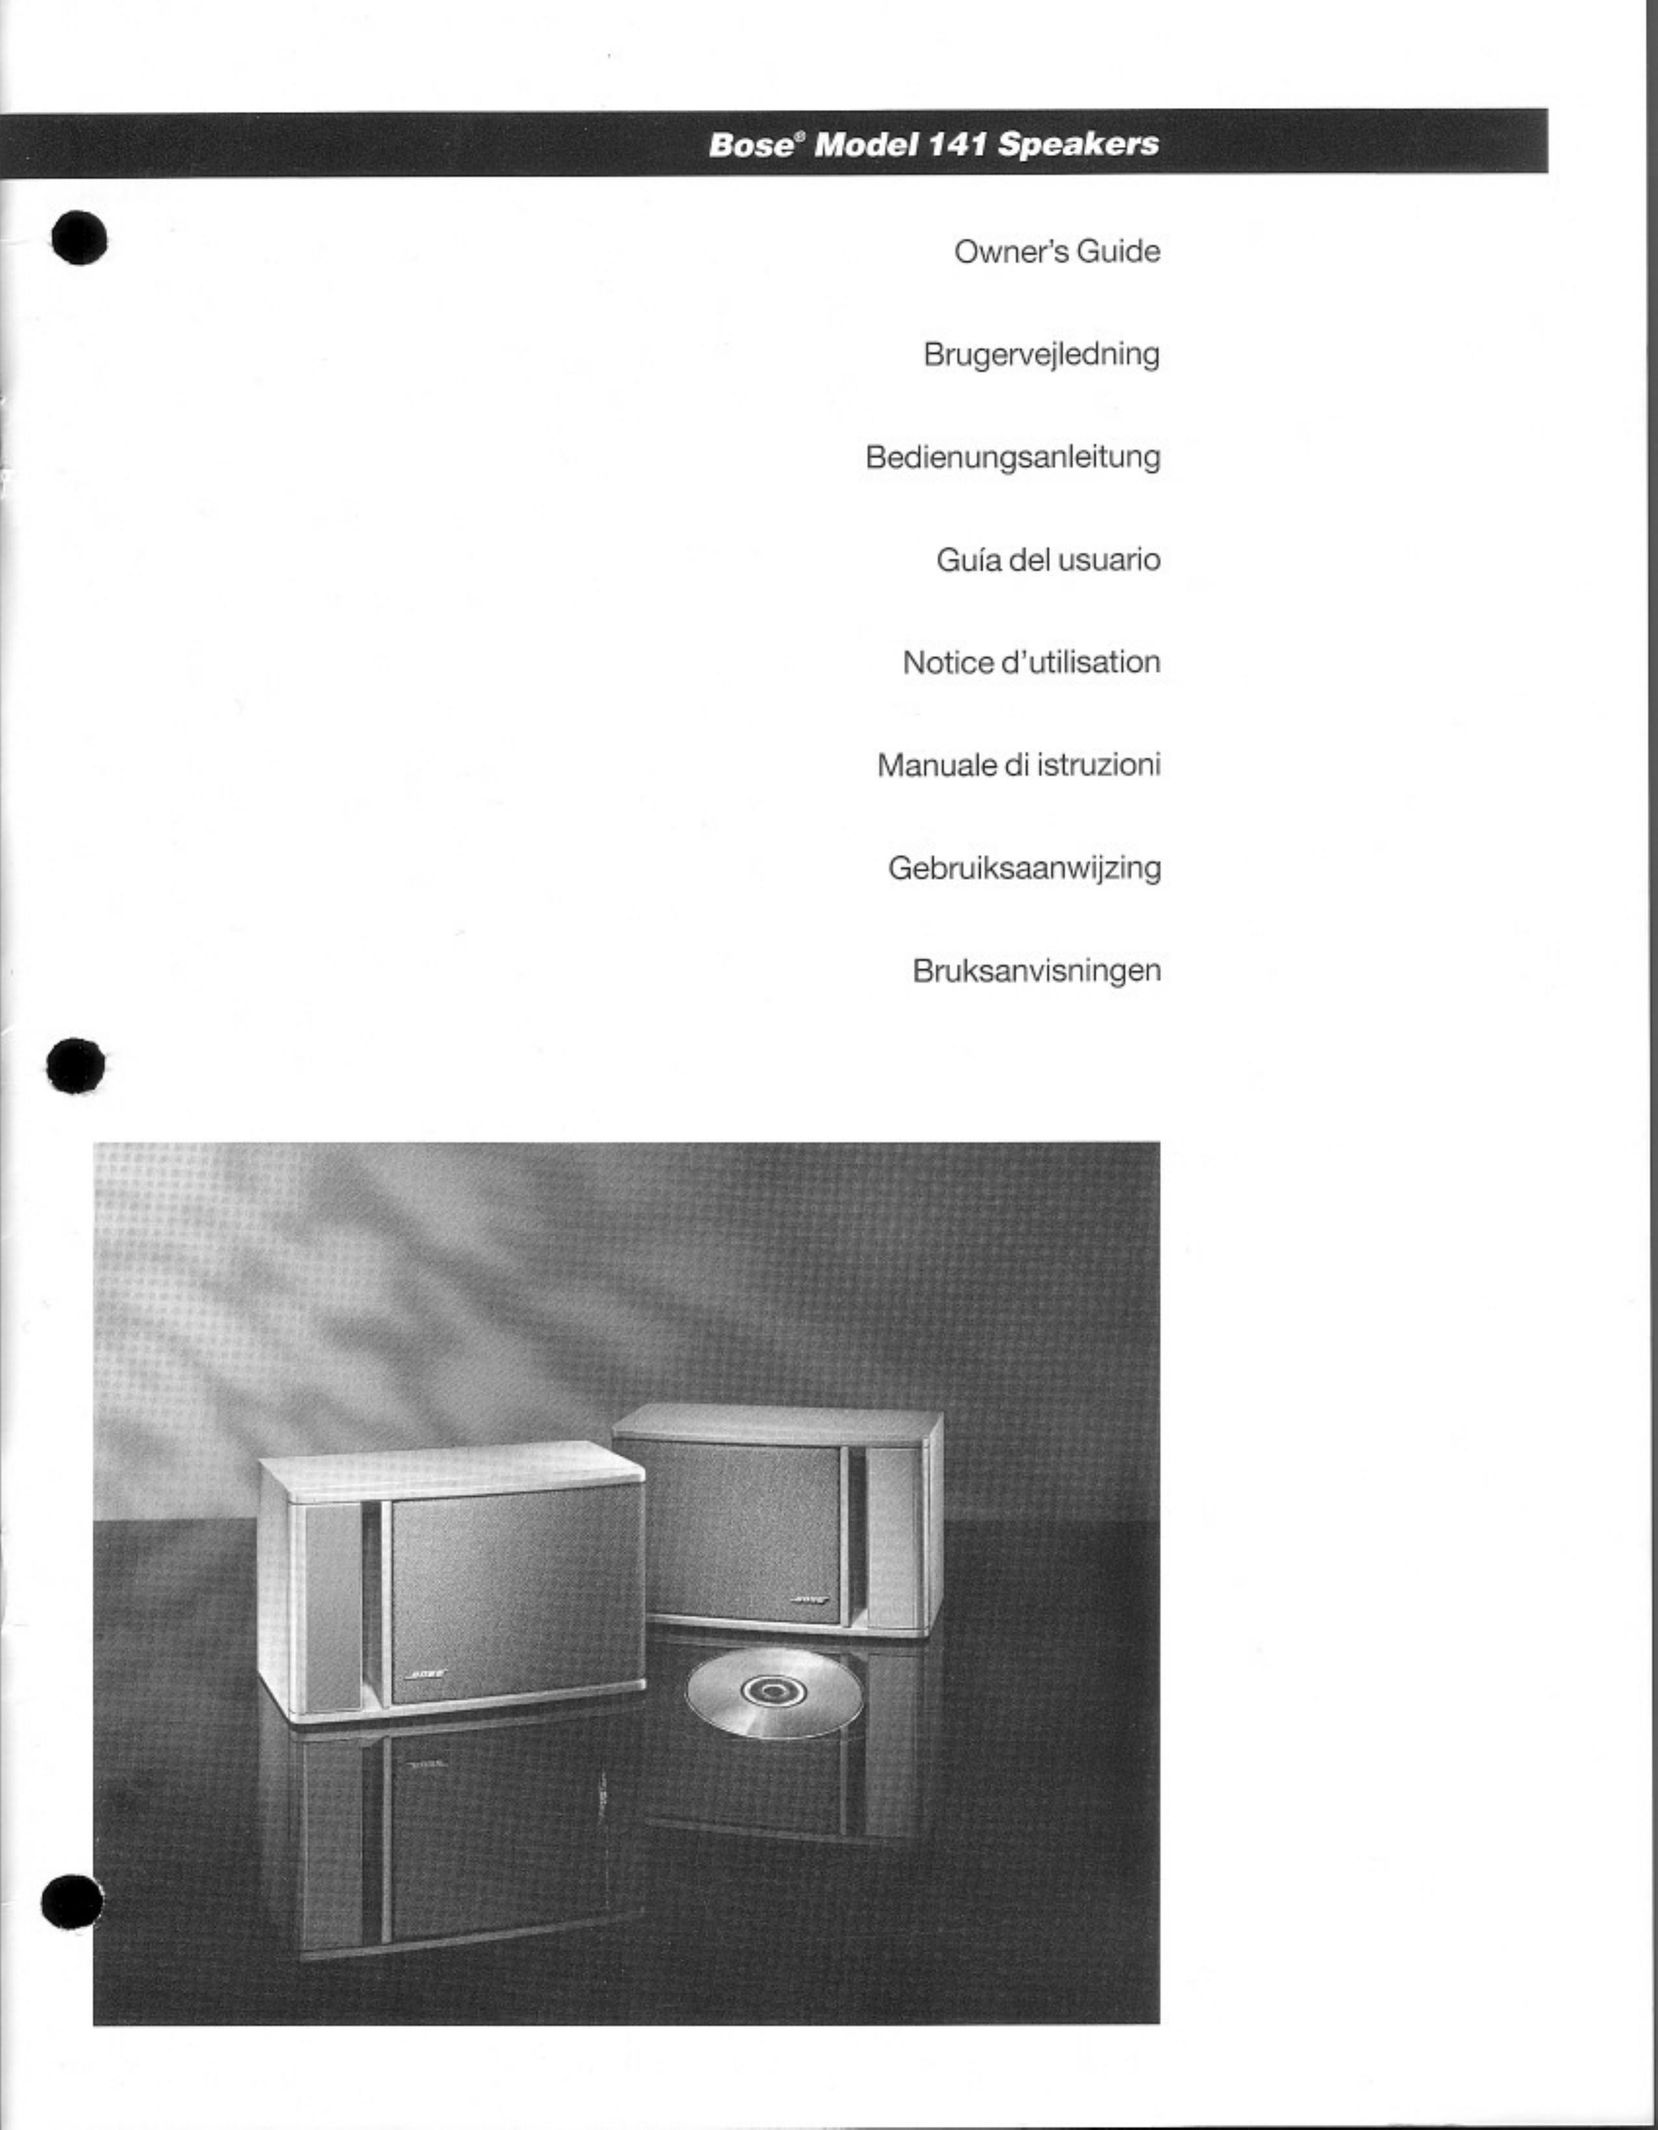 Bose 141 Speaker User Manual